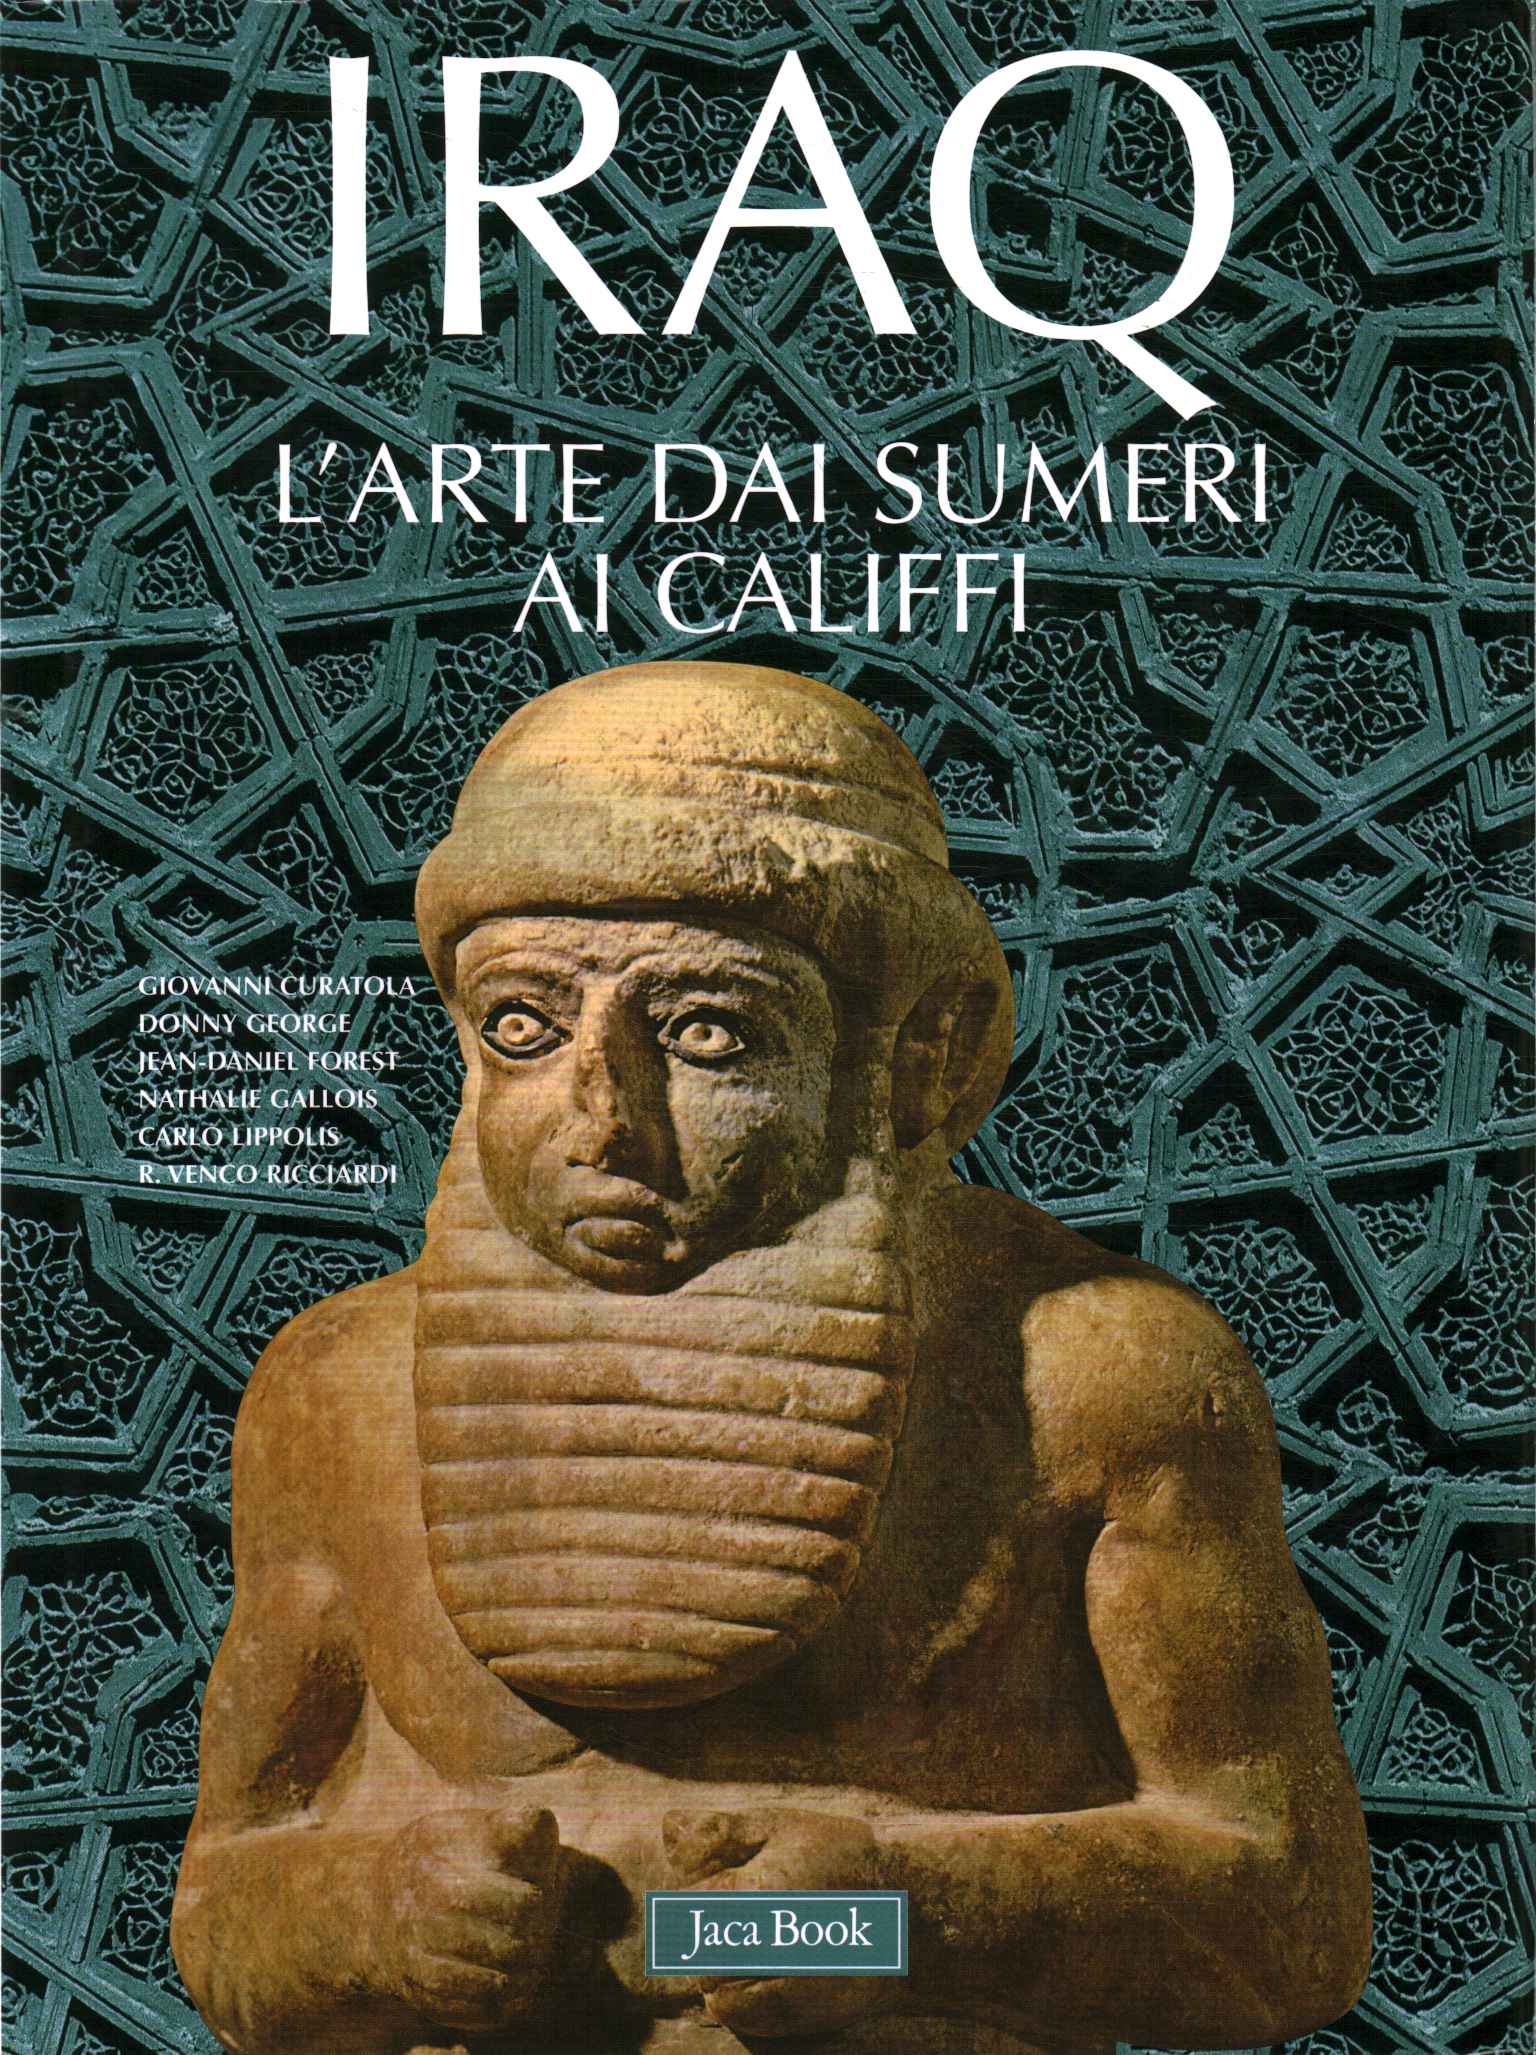 El arte iraquí, desde los sumerios hasta Cal